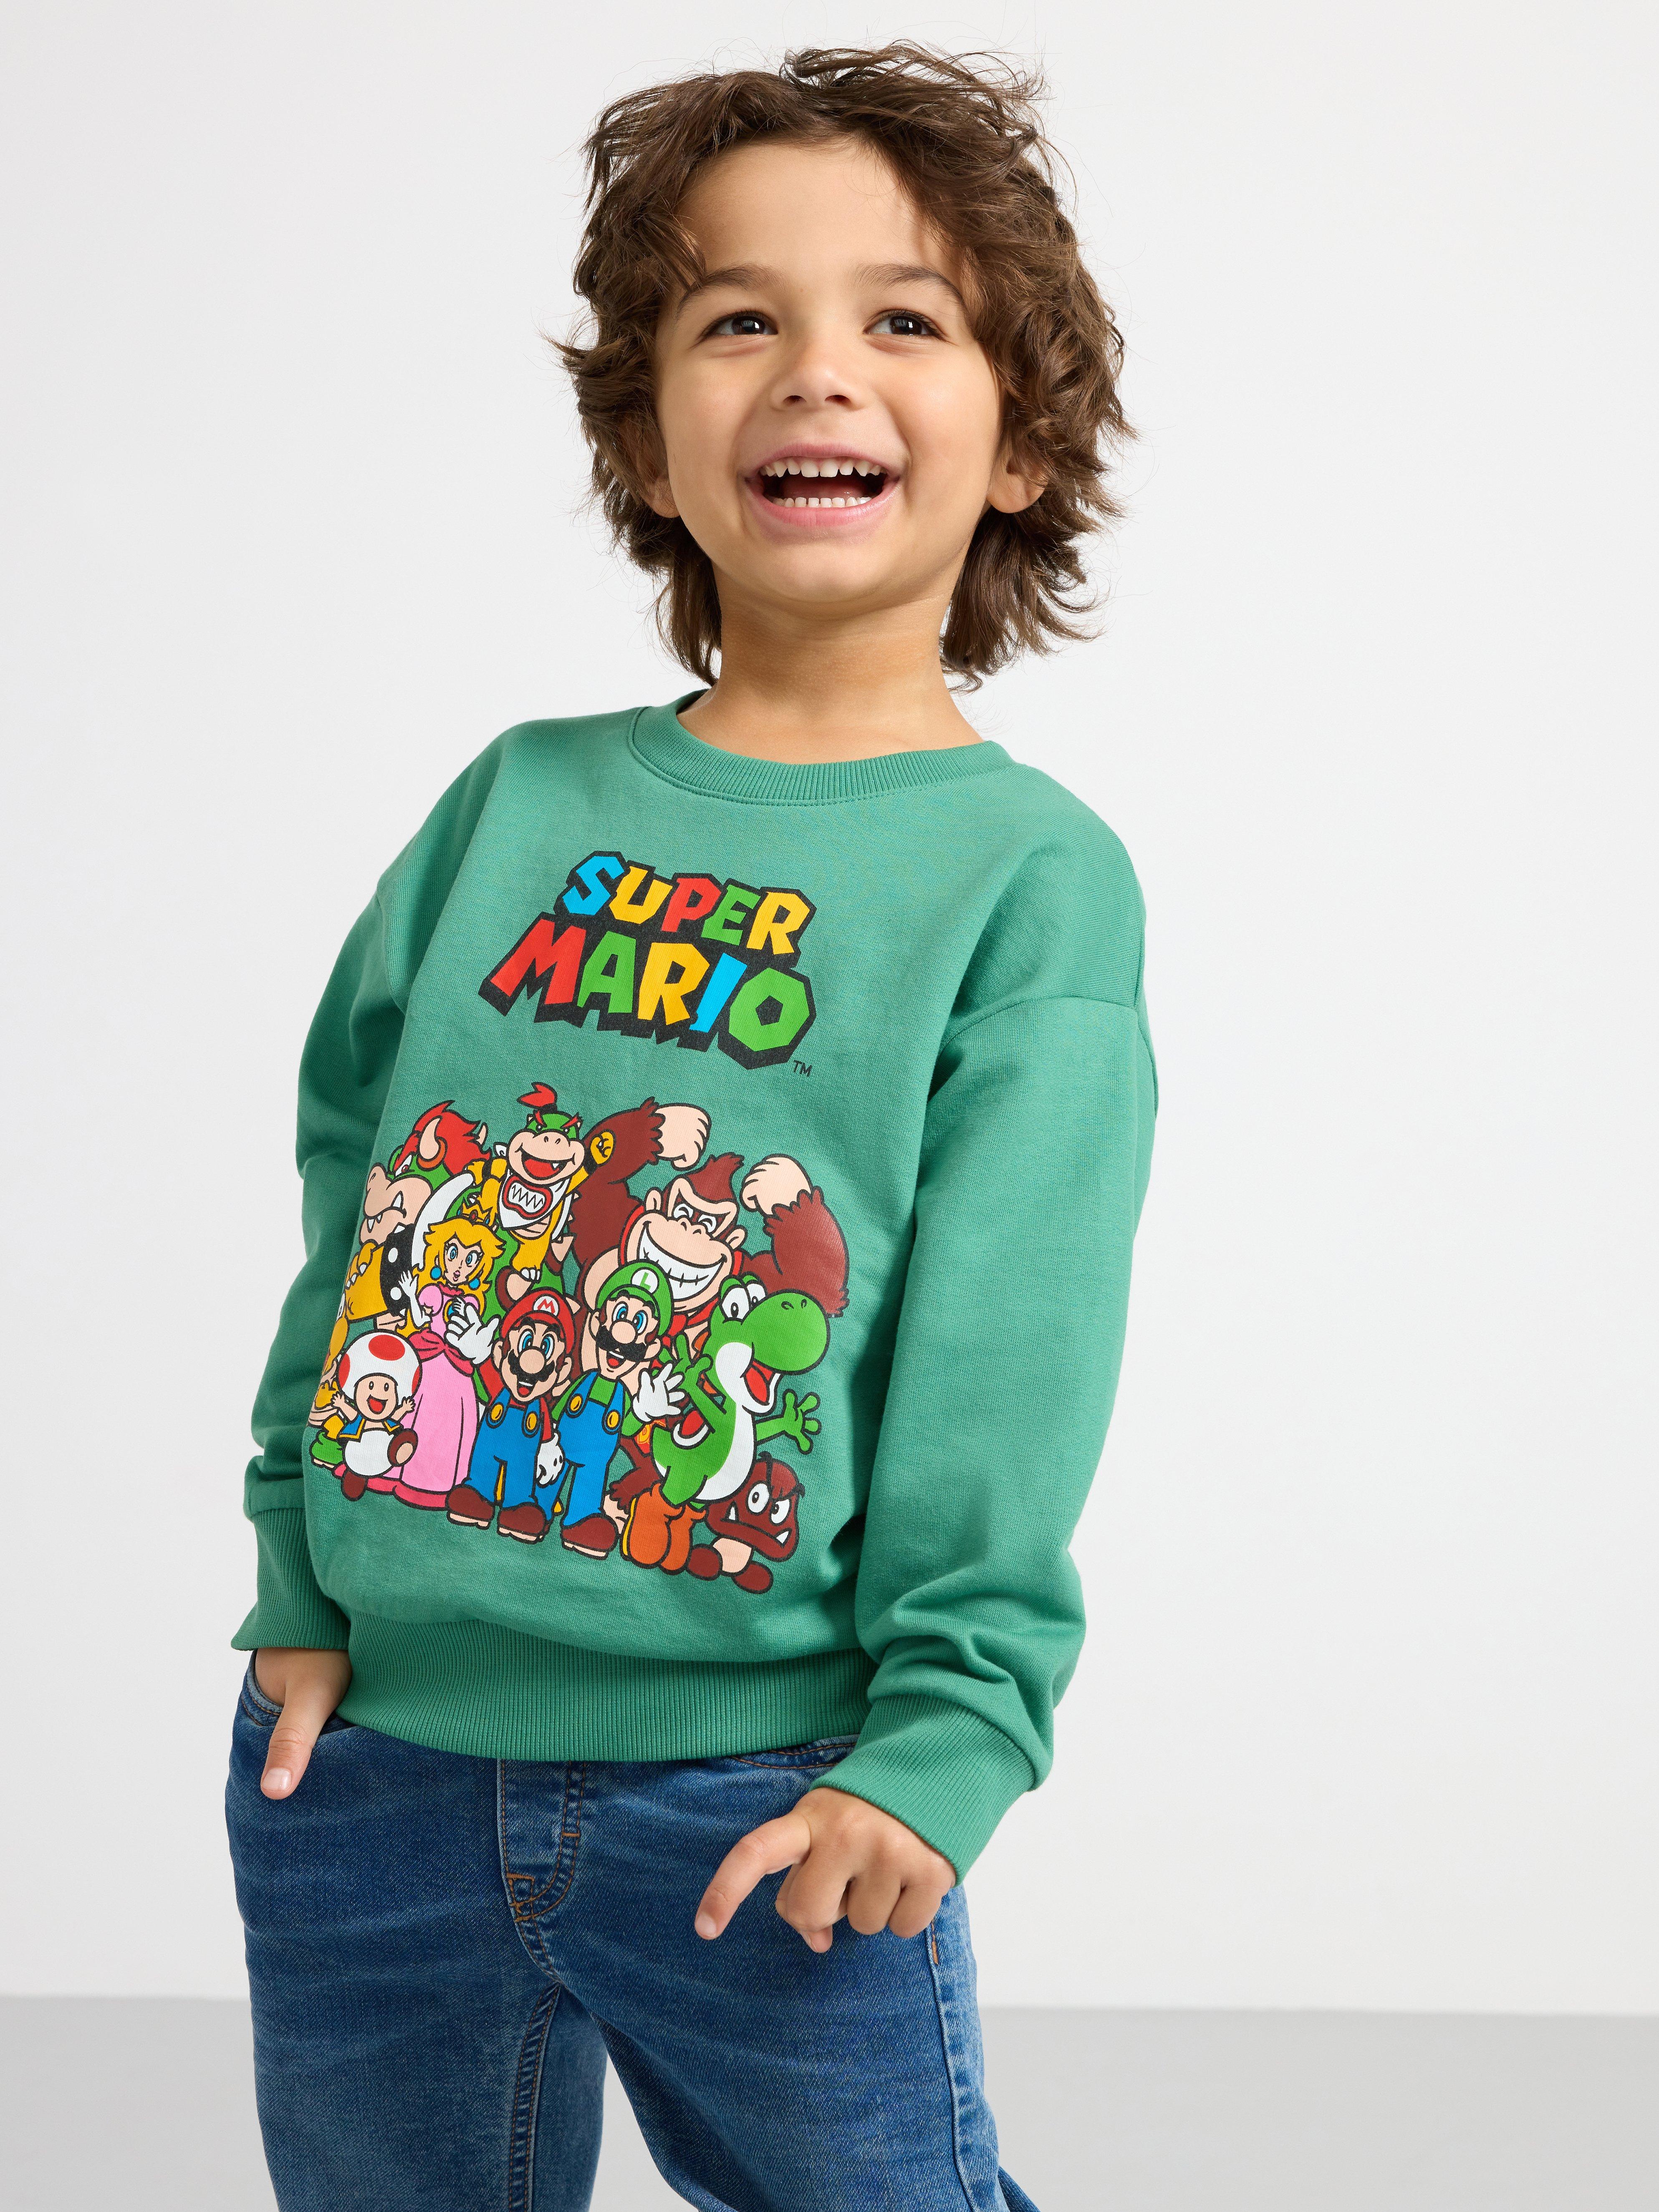 Super Mario Sweatshirt